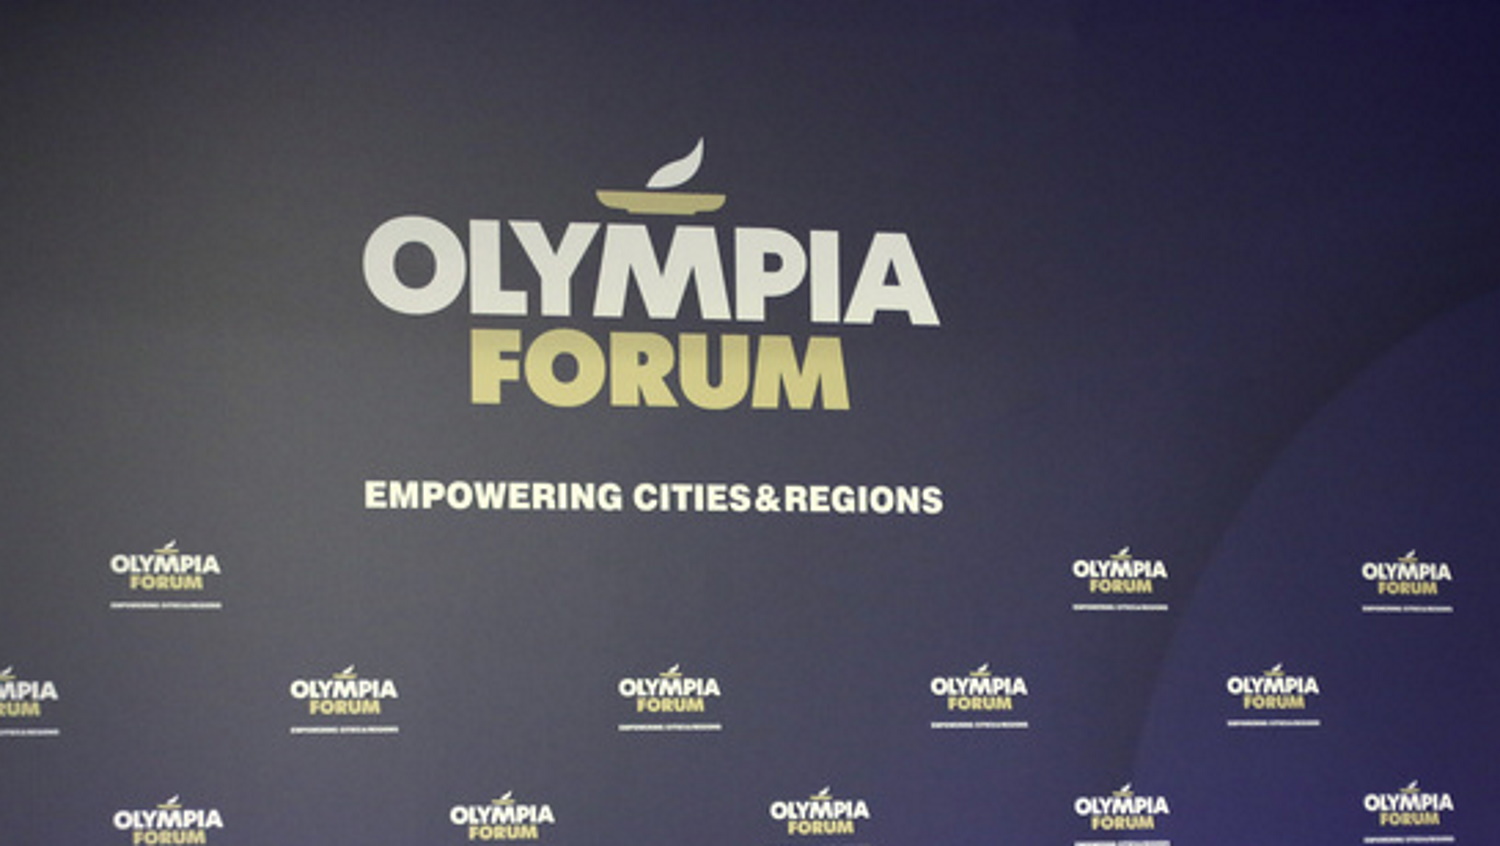 Κυριάκος Μητσοτάκης στο Olympia Forum IIΙ: «Κύρια δύναμη της εθνικής ευημερίας η ανάπτυξη των περιφερειών»